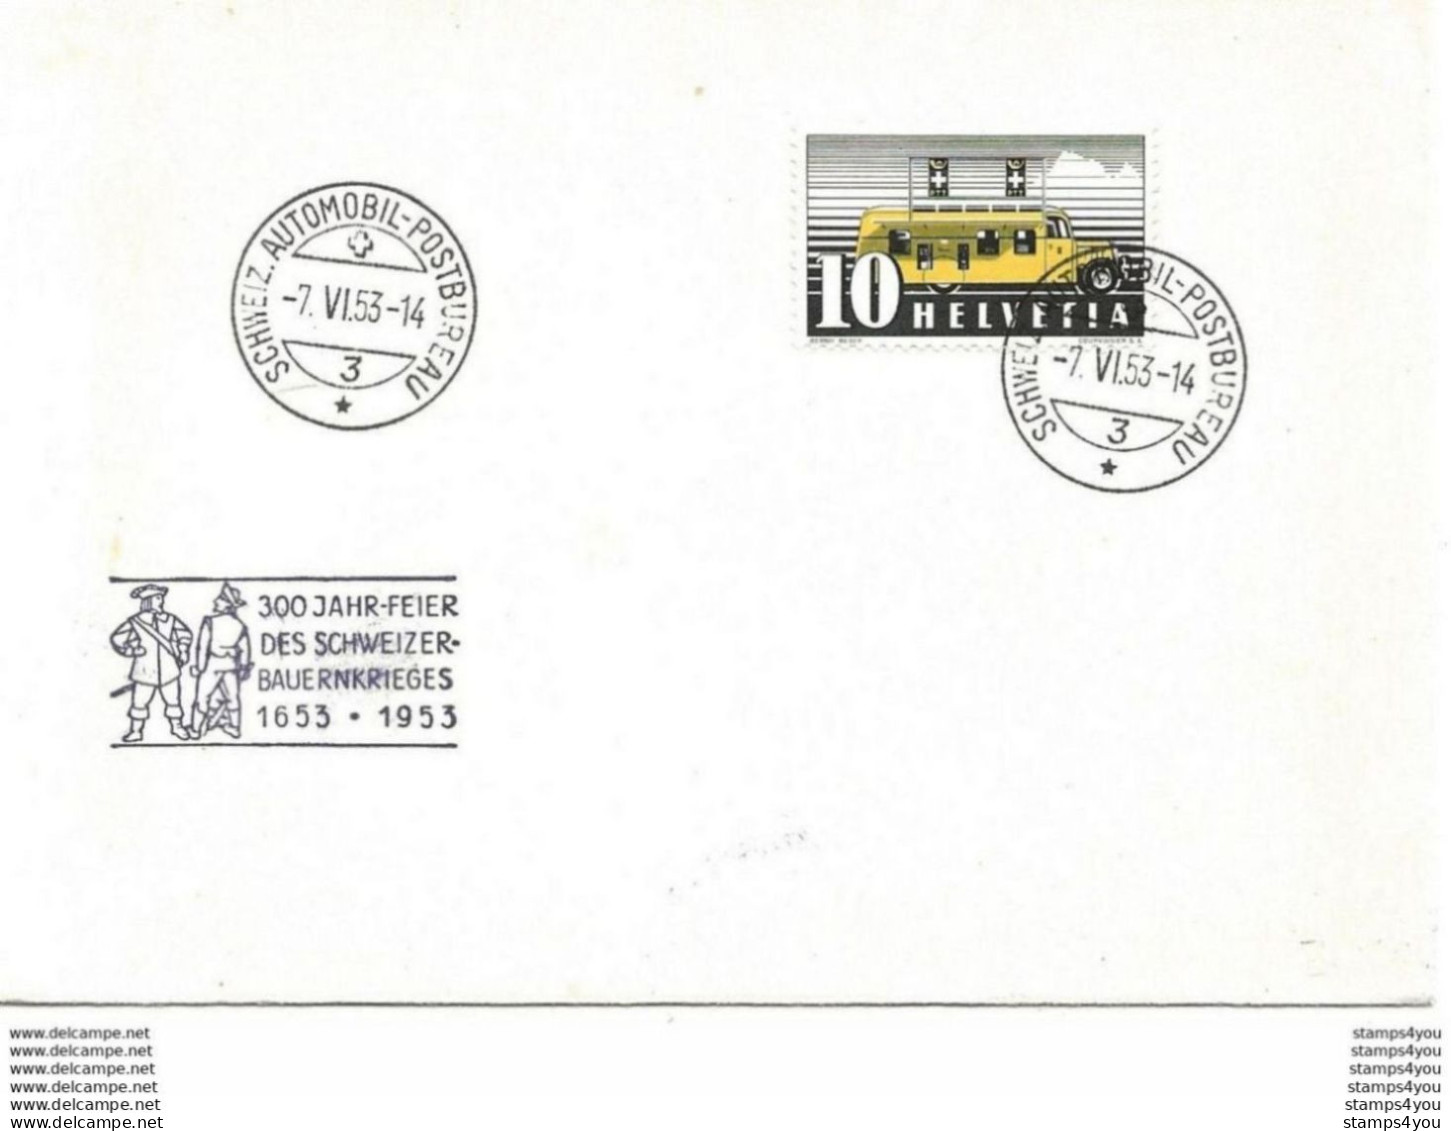 244 - 86 - Enveloppe Avec Oblit Spéciale "300 Jahr-Fest Des Schweizer-Bauernkriefes 1953" - Marcophilie